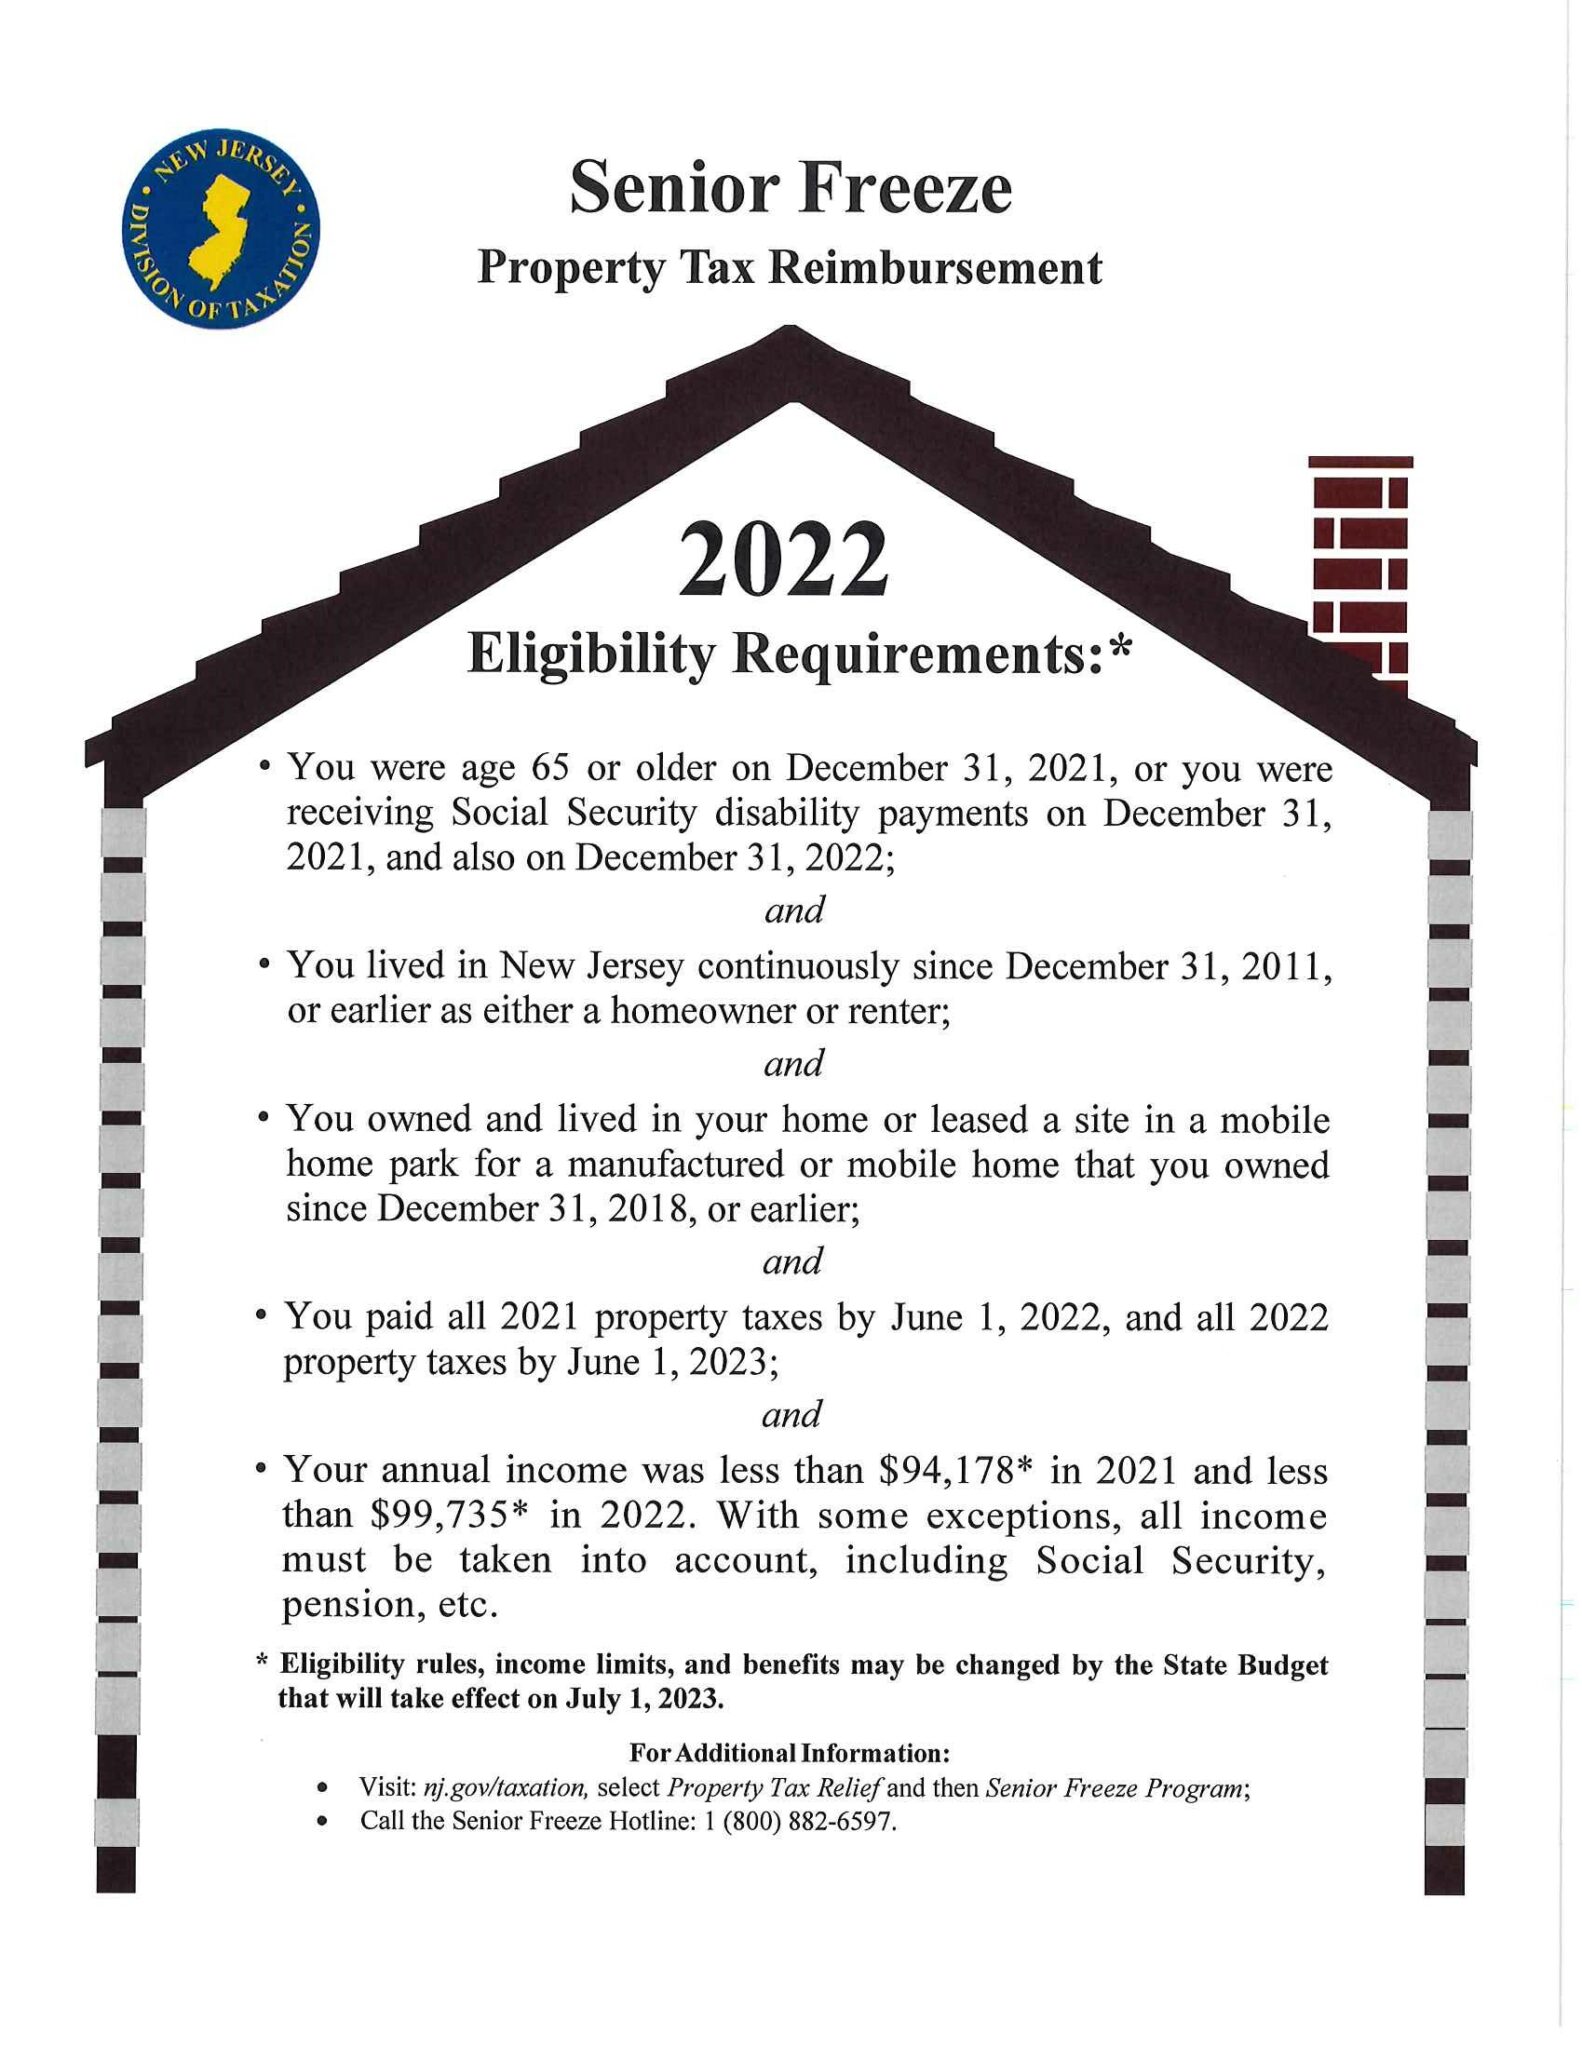 Senior Freeze Property Tax Reimbursement 2022 Eligibility